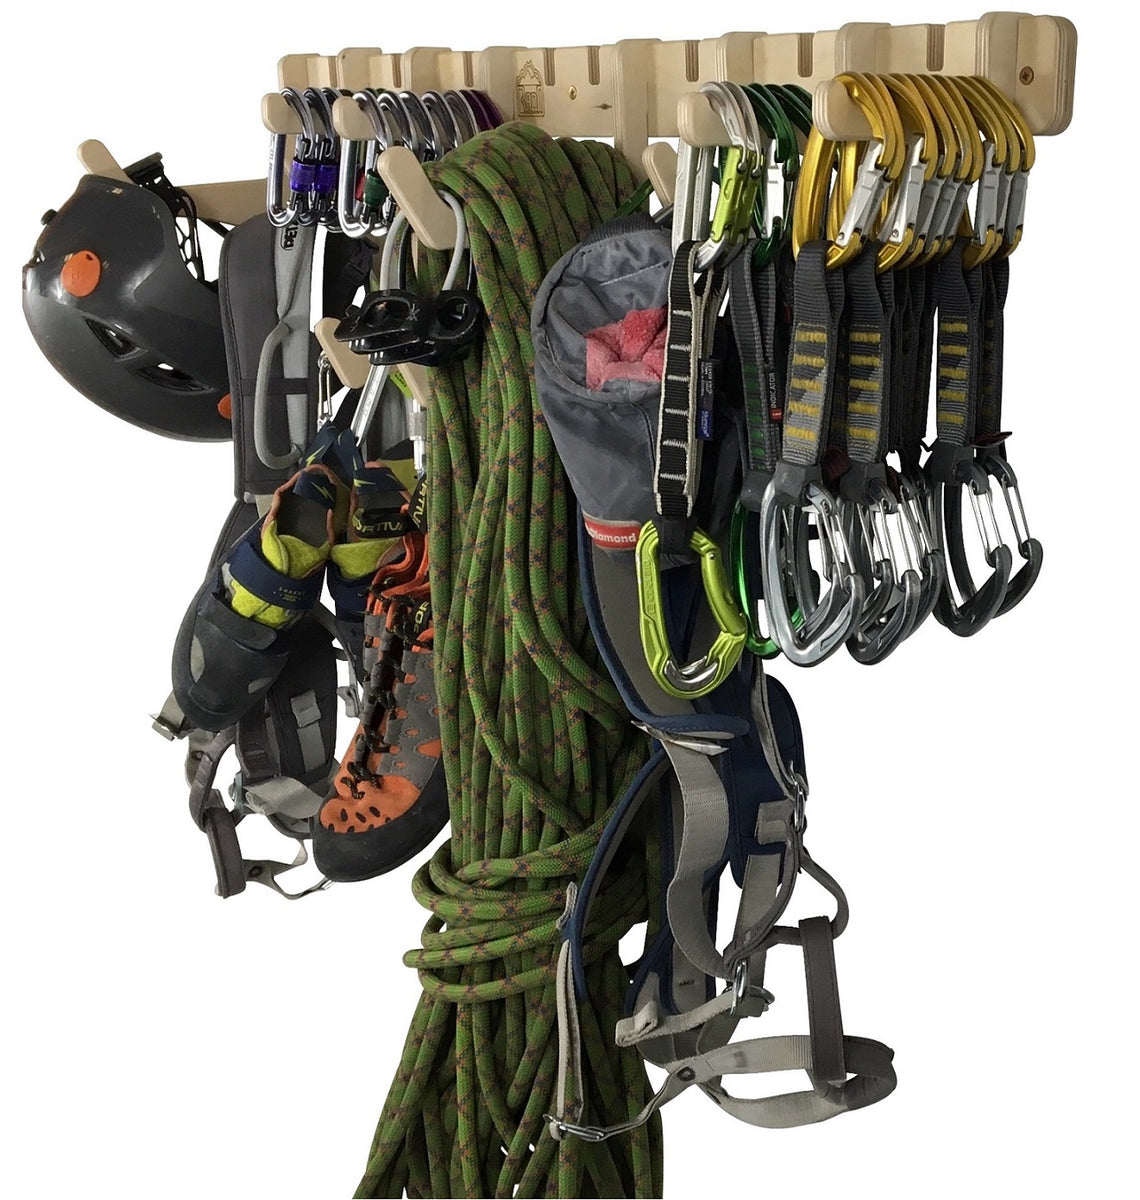 THE ANCHOR climbing gear rack – Rado Racks